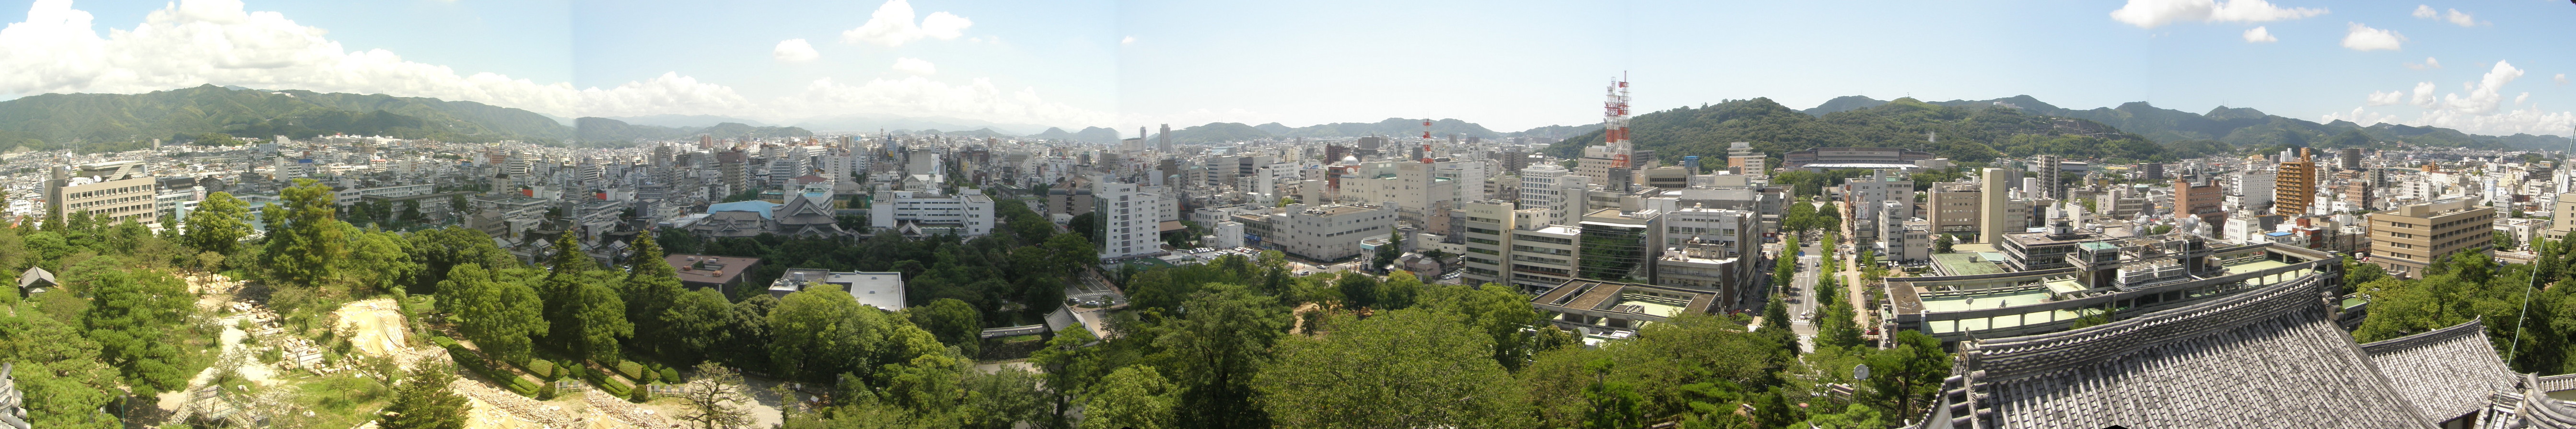 Panorama der Innenstadt von Kōchi